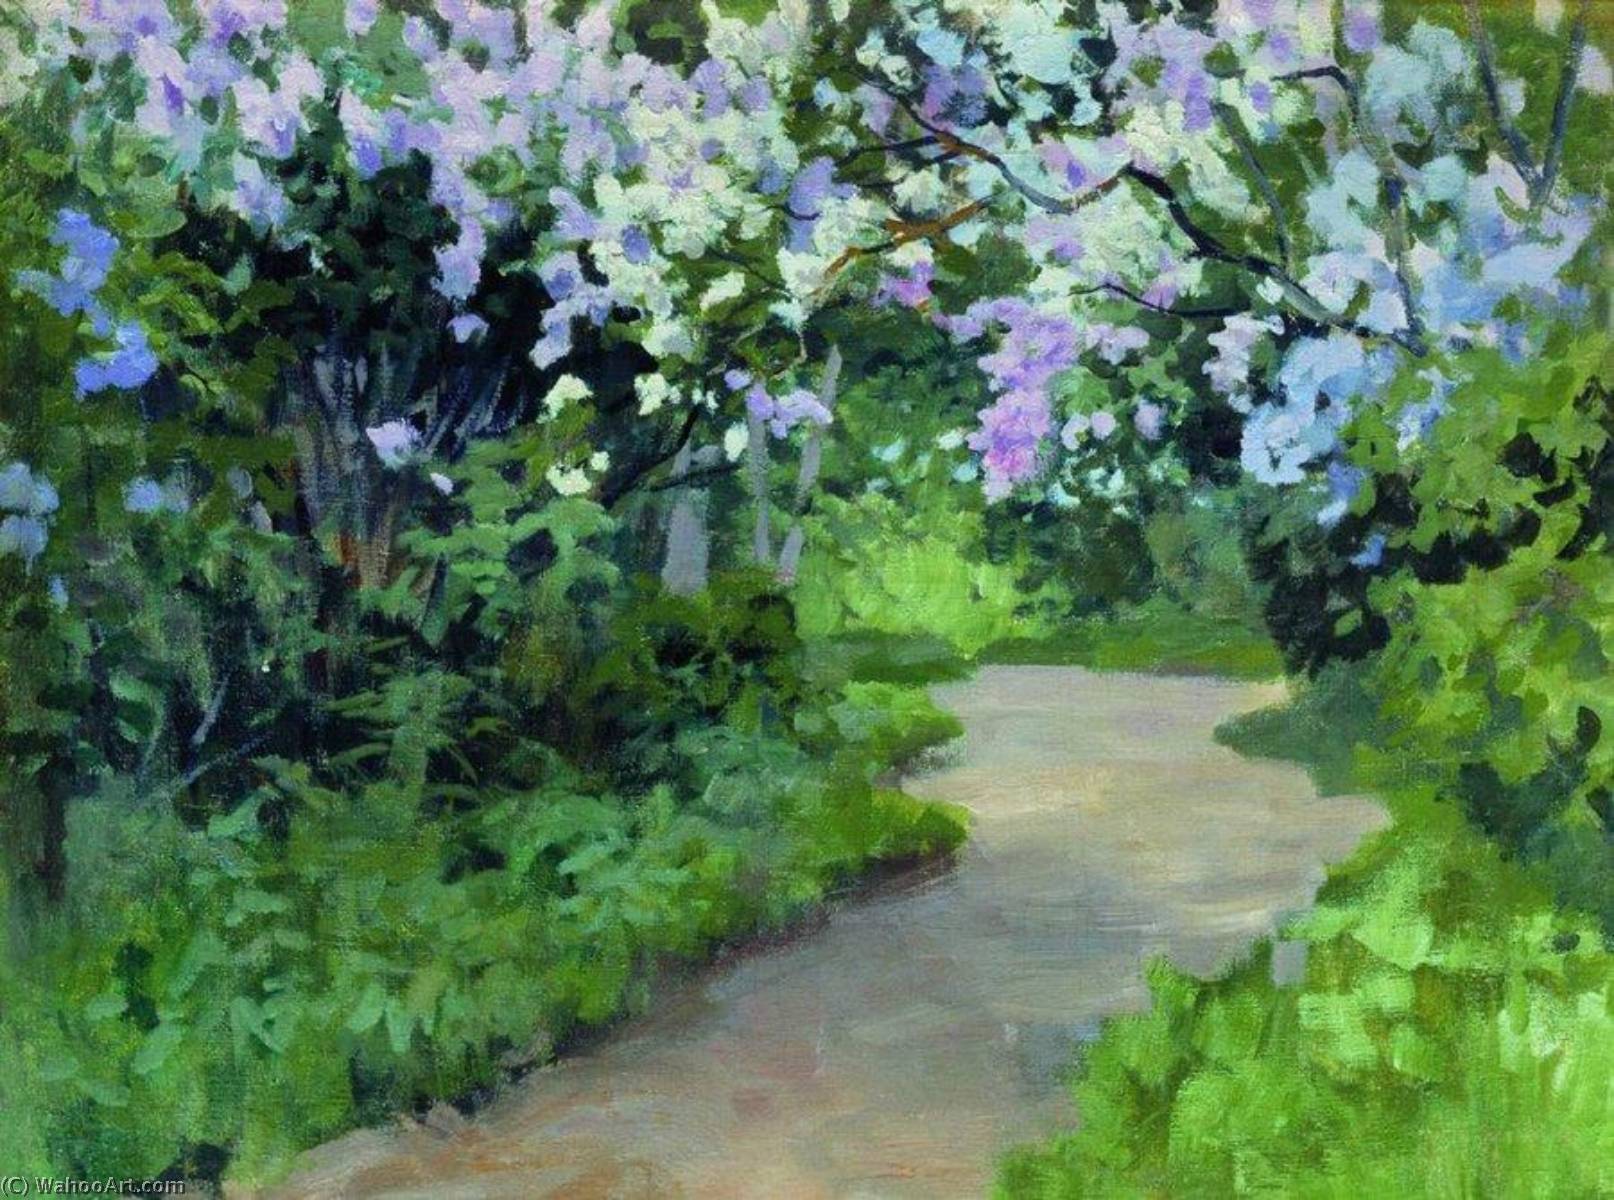 Achat Reproductions D'art Lilac de Alexei Stepanov (1858-1923) | ArtsDot.com